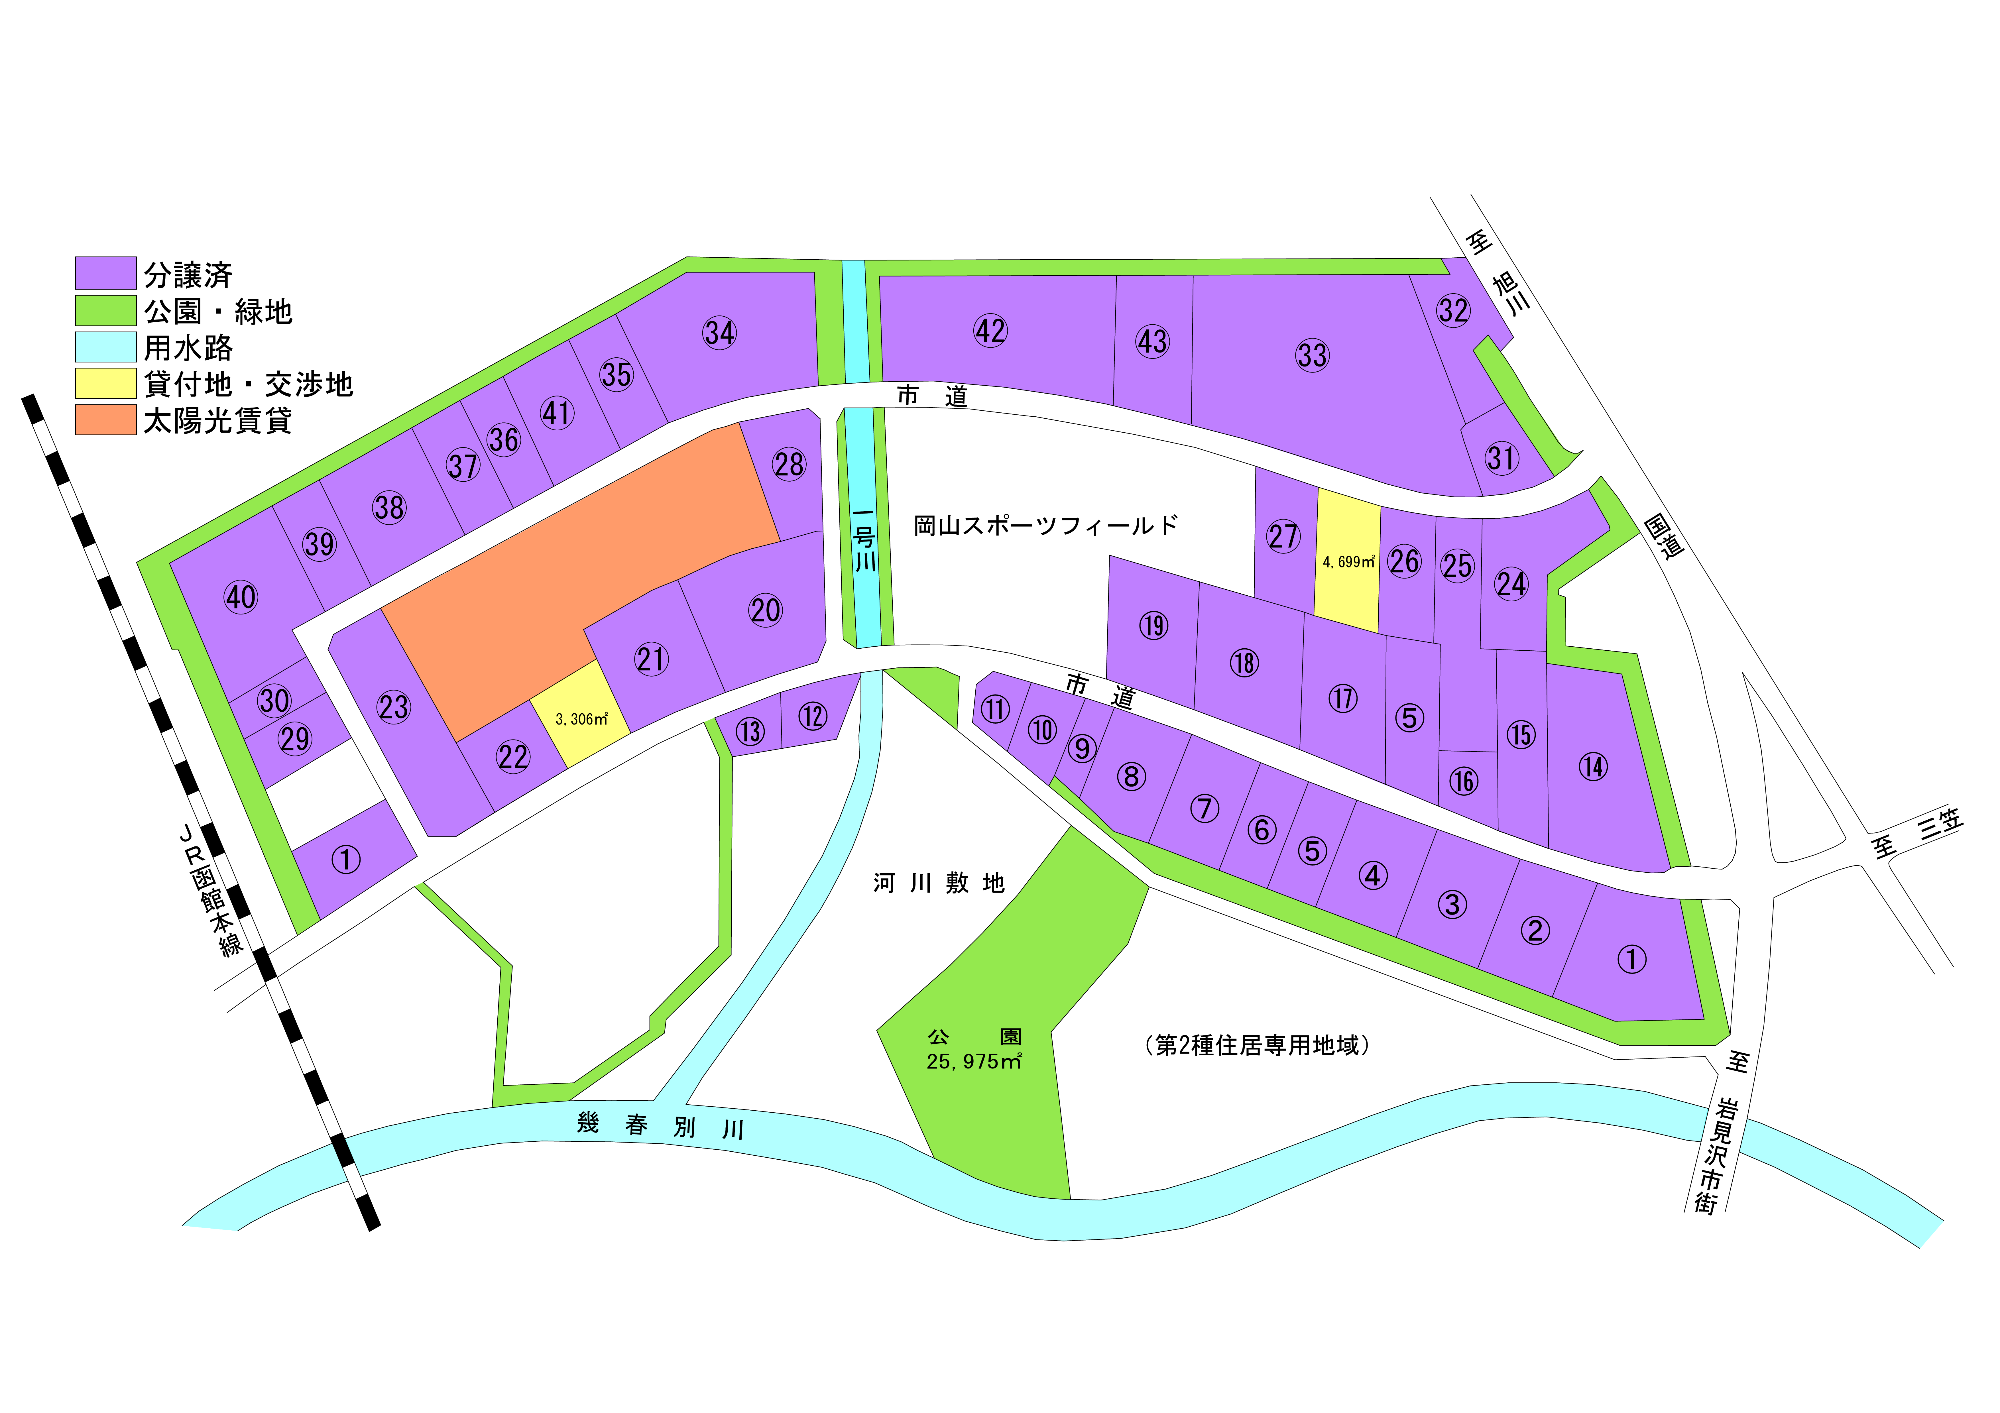 岡山工業団地区画図 詳細は以下